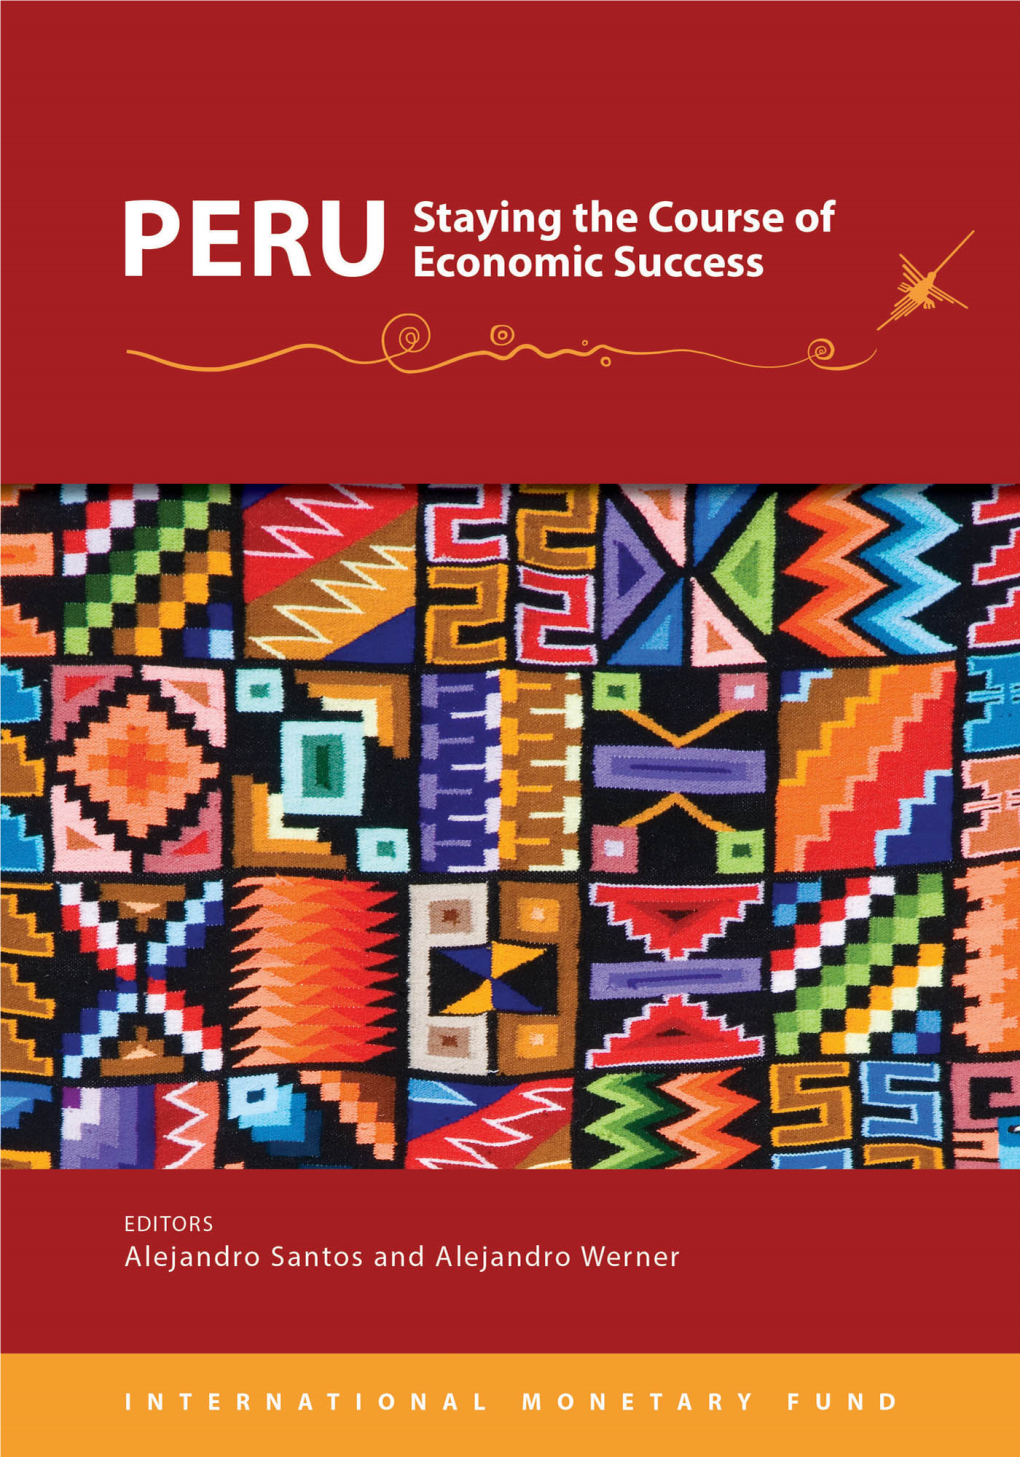 PERU Economic Success